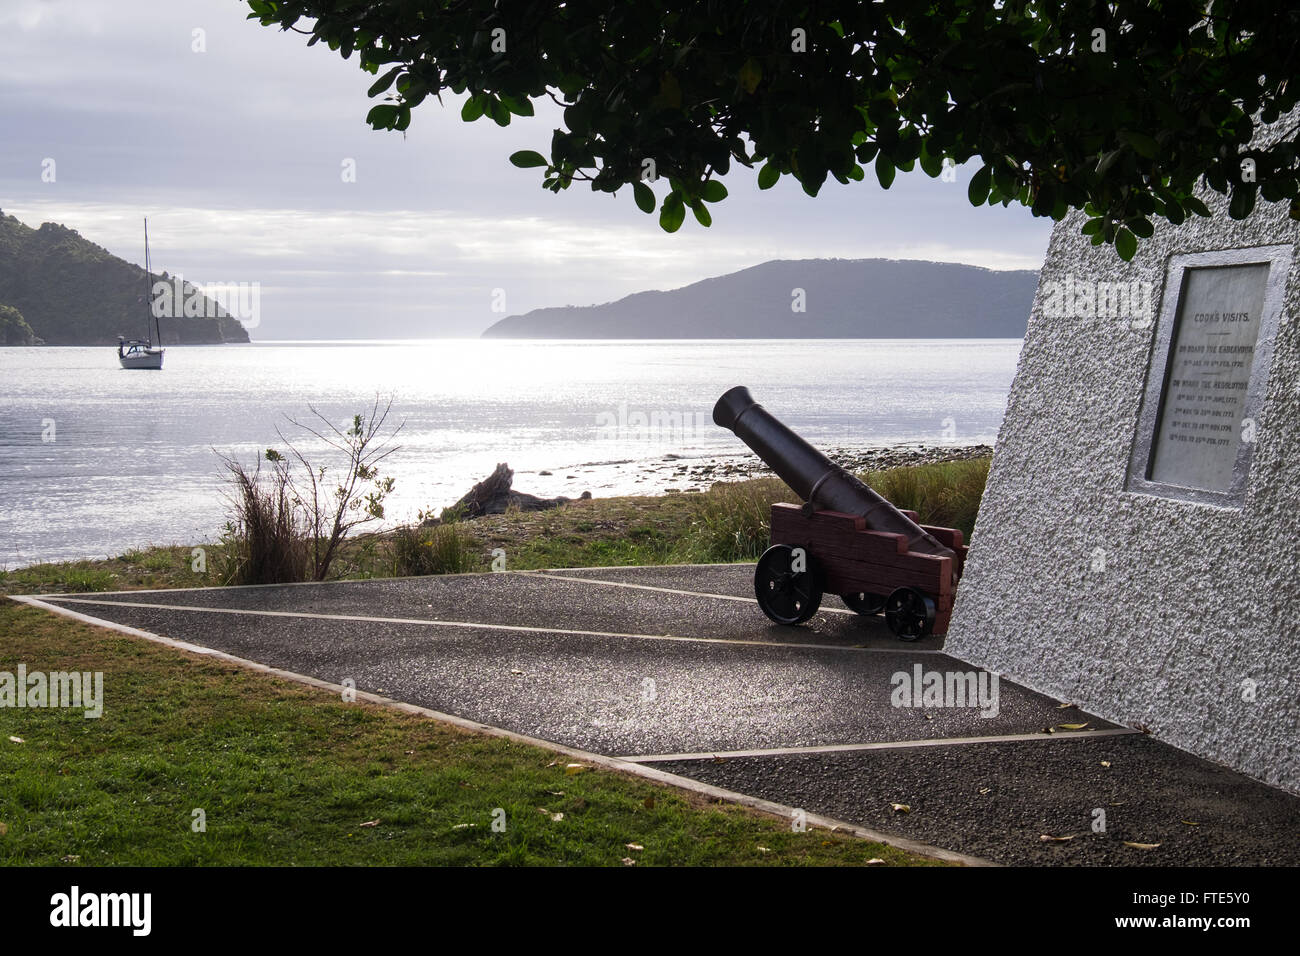 Le monument du Capitaine Cook à Ship's Cove dans le Marlborough Sounds, en Nouvelle-Zélande. Banque D'Images